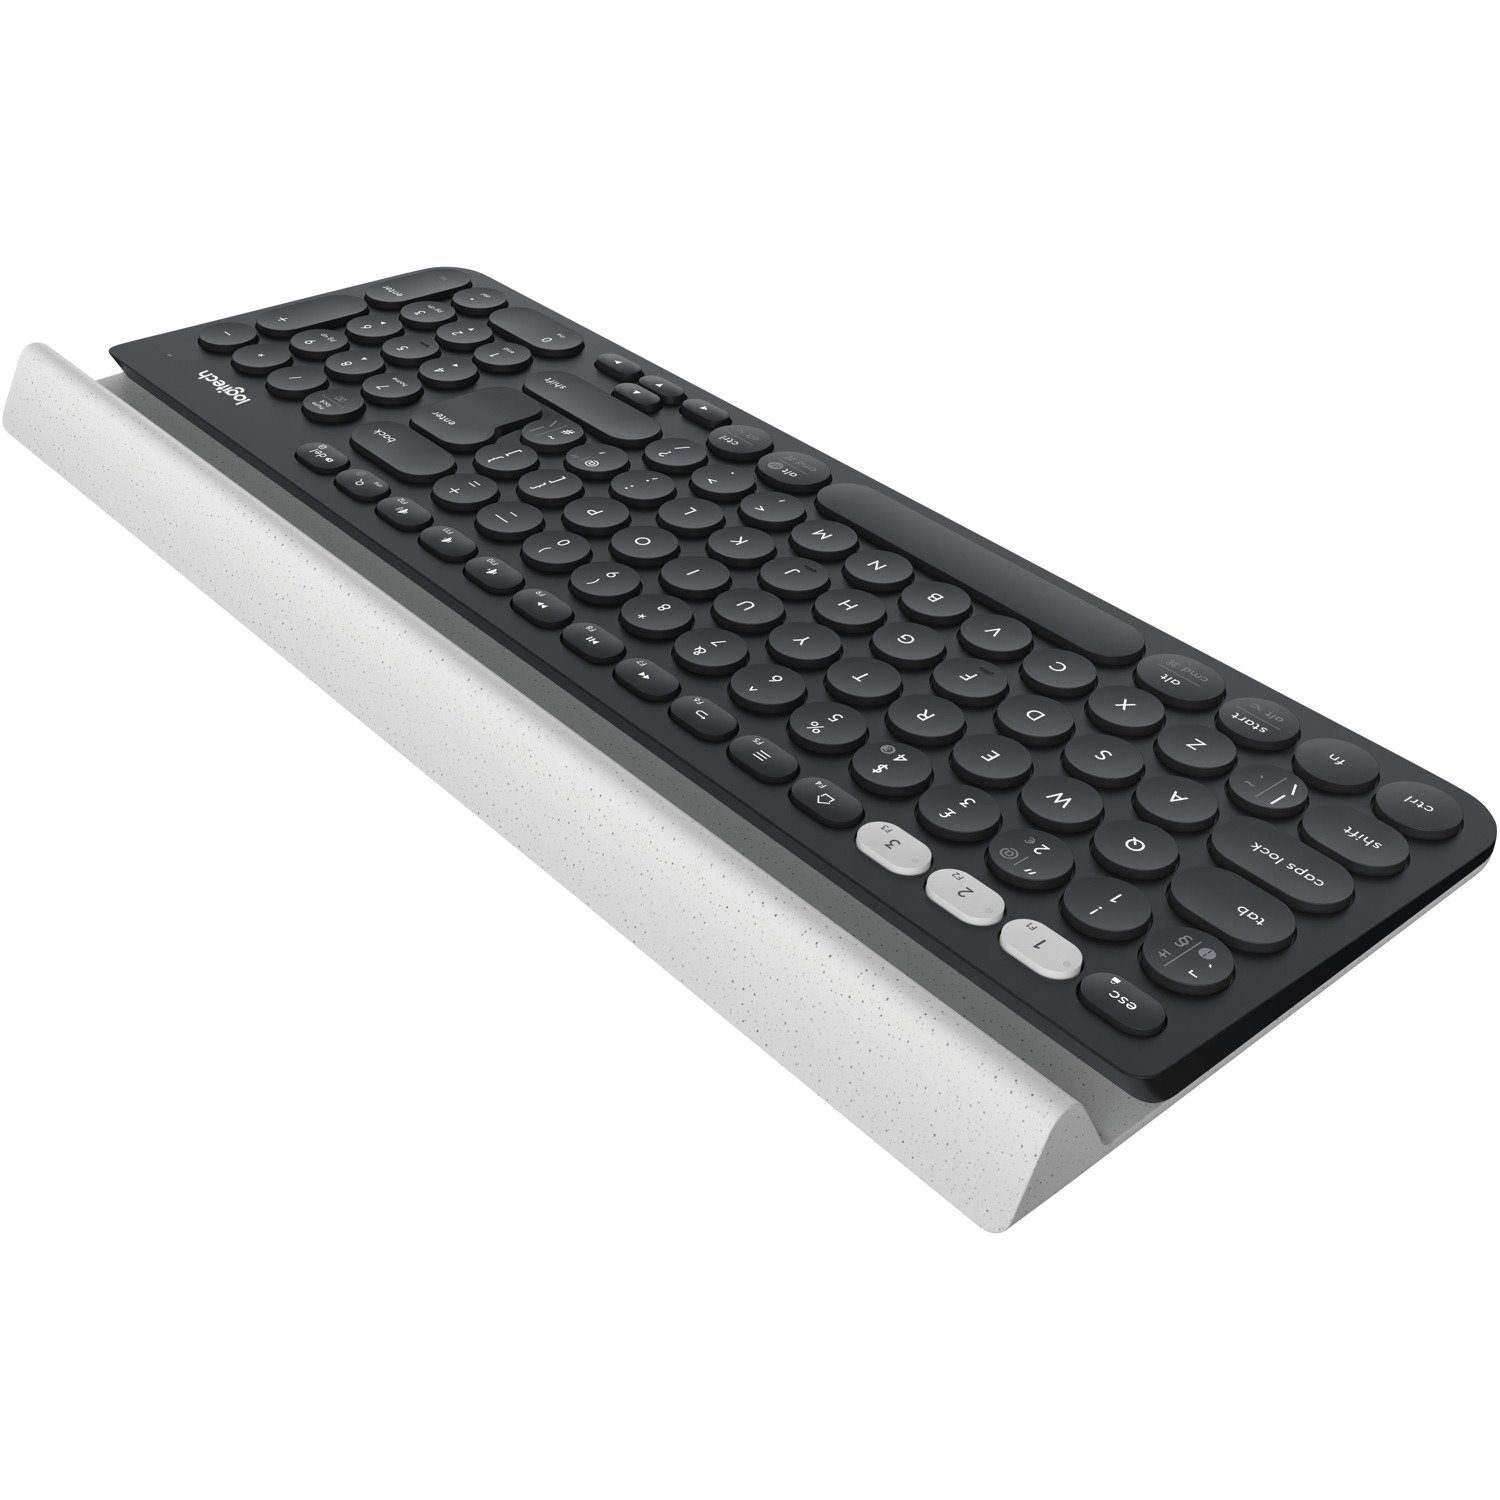 Logitech K780 Keyboard - Wireless Connectivity - USB Interface - QWERTY Layout - White